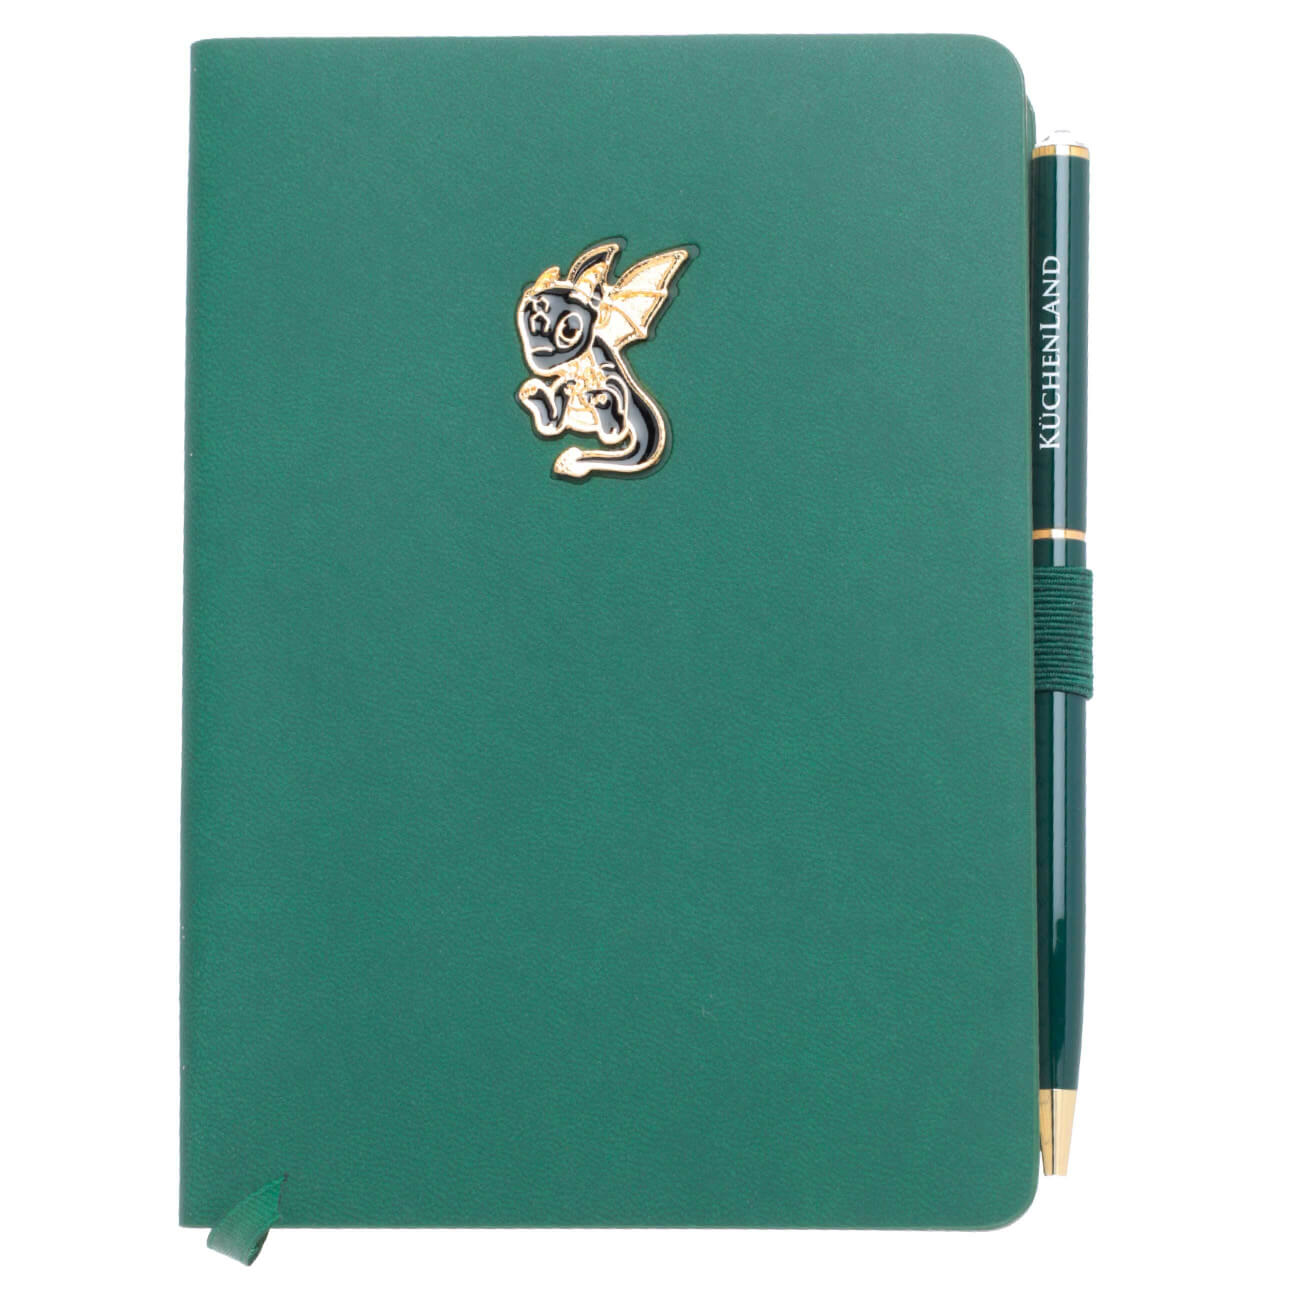 Блокнот для записей, 15х11 см, с ручкой, полиуретан, зеленый, Дракон с крыльями, Dragon spyro betty one блокнот a5